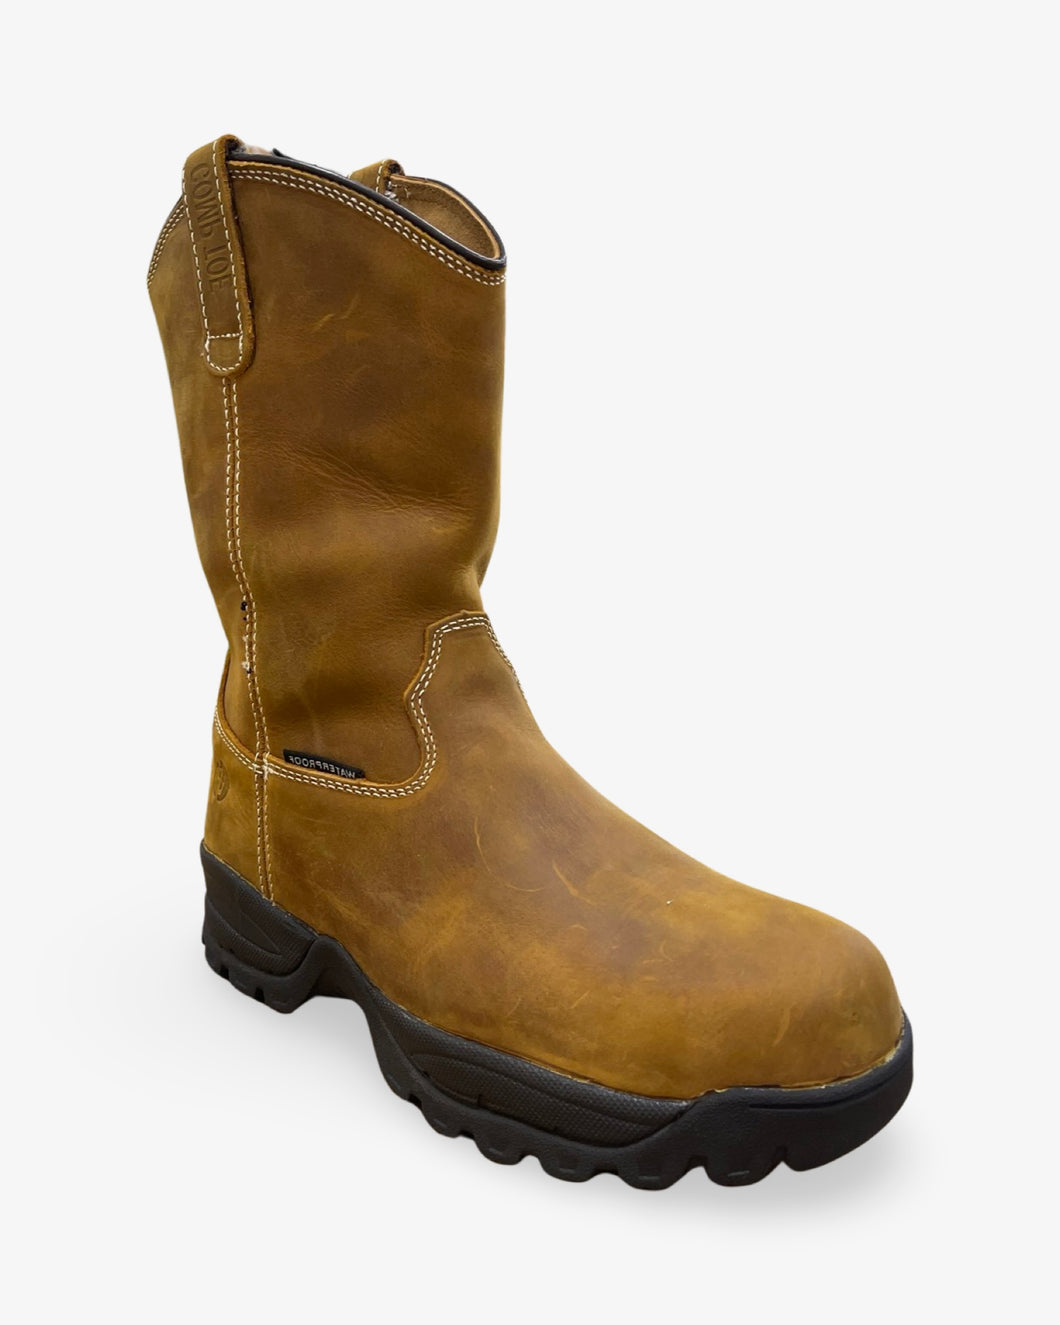 Cactus WP1025C Waterproof & Steel Toe Dark Brown Boot